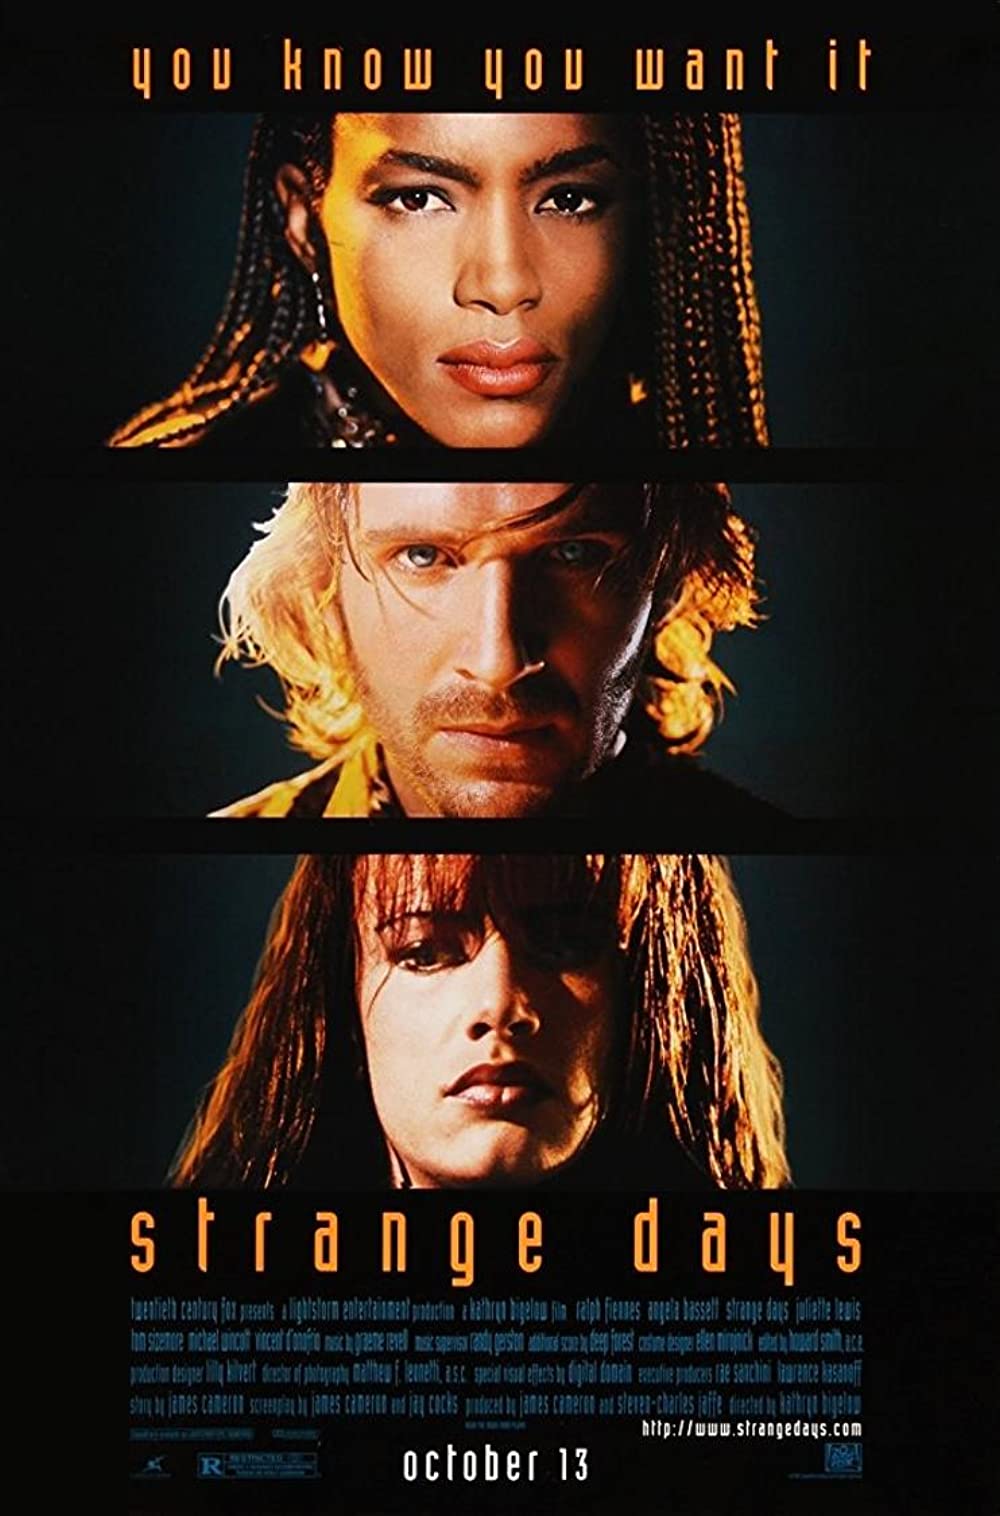 Filmbeschreibung zu Strange Days (OV)